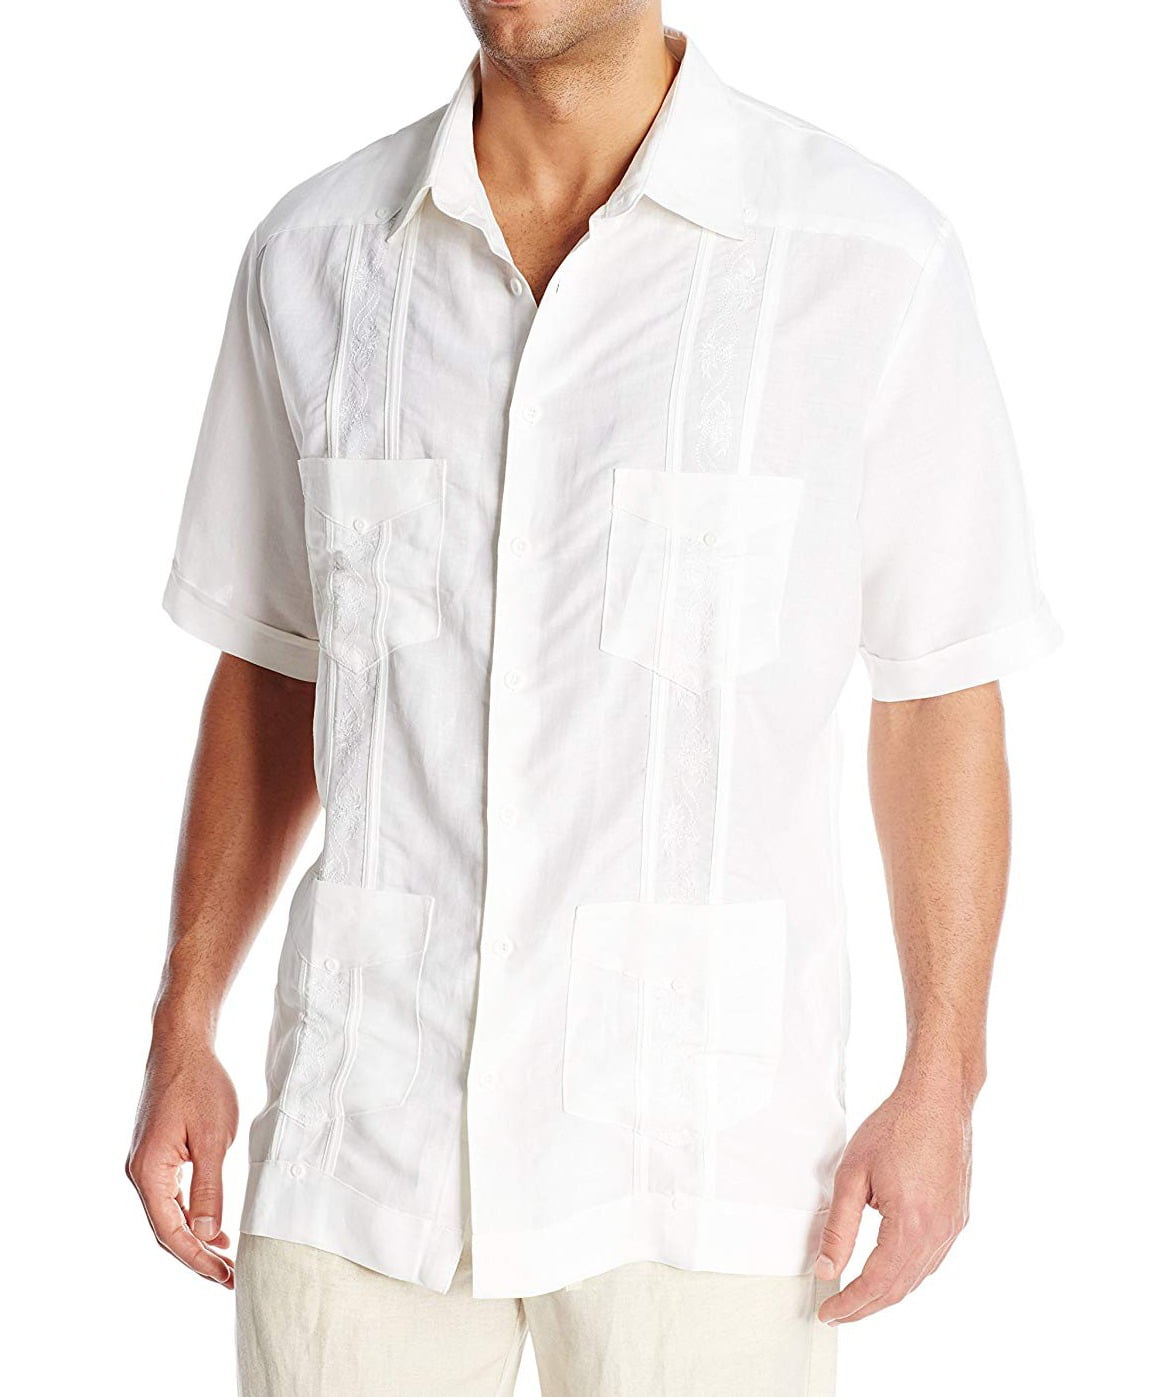 Cubavera - Mens Shirt Bright Dual Pocket Guayabera Big 4X - Walmart.com ...